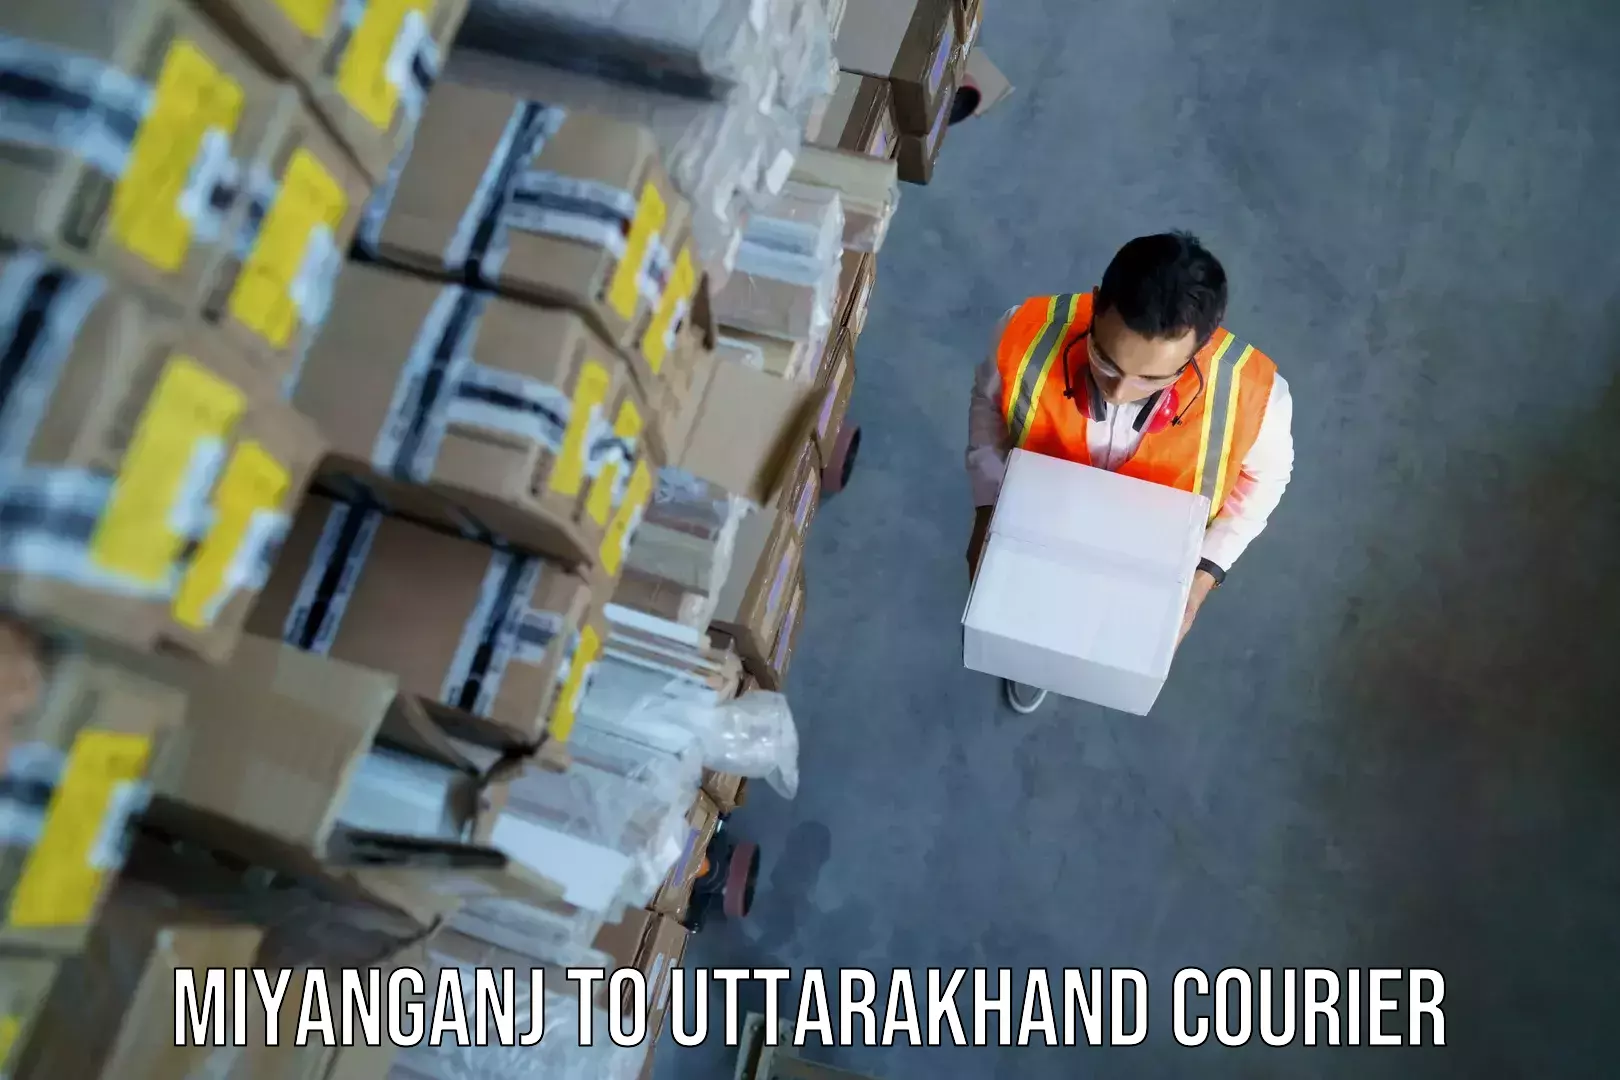 Luggage shipment specialists Miyanganj to Uttarkashi